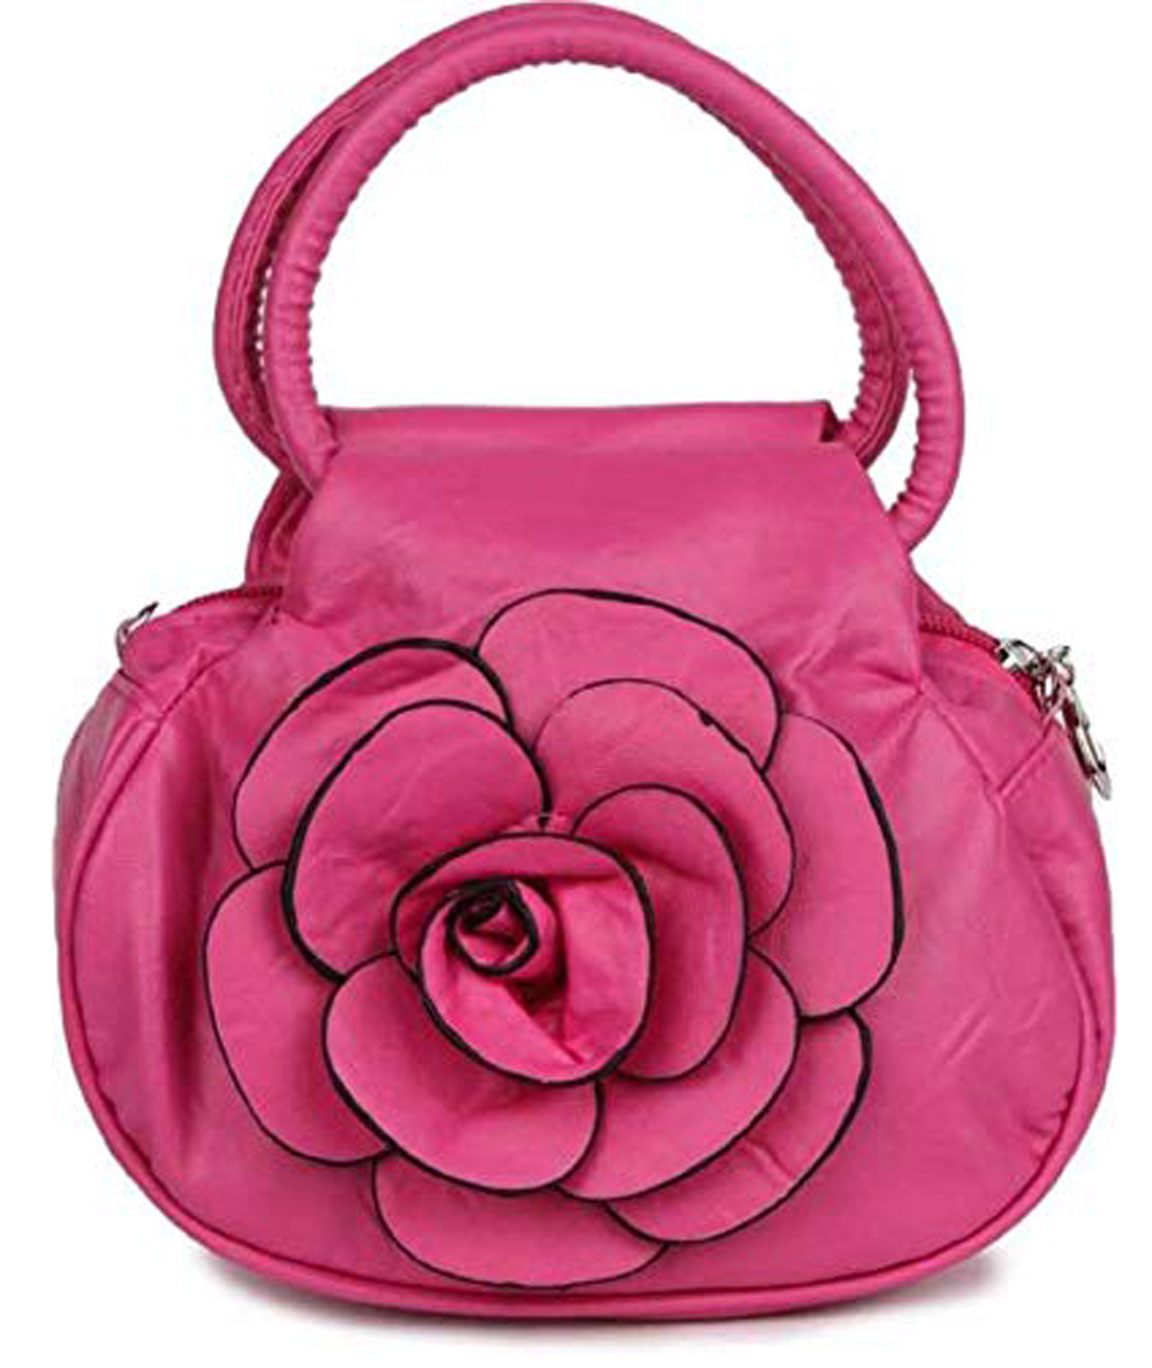 Buy online Anna Cecere light blue leather purse cuty bon bon bag